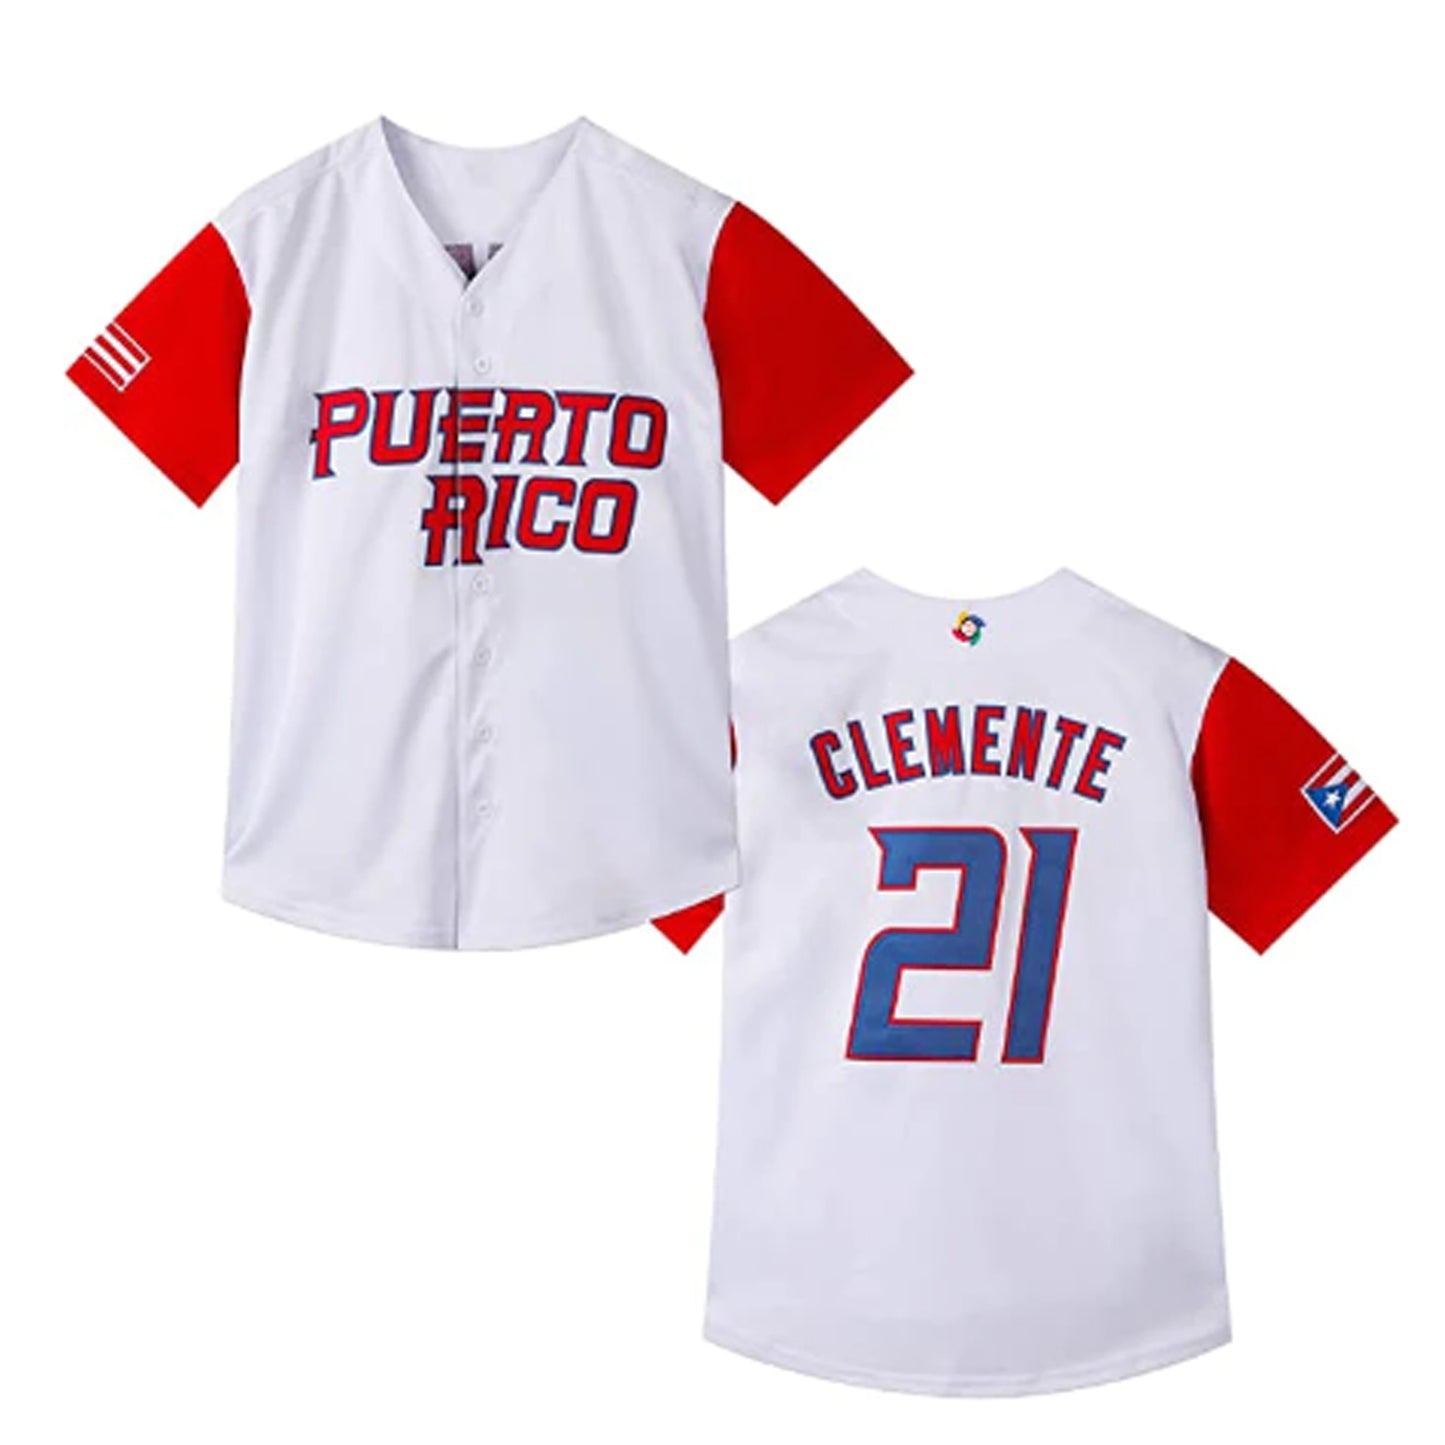 Puerto Rico Roberto Clemente Baseball 21 Jersey